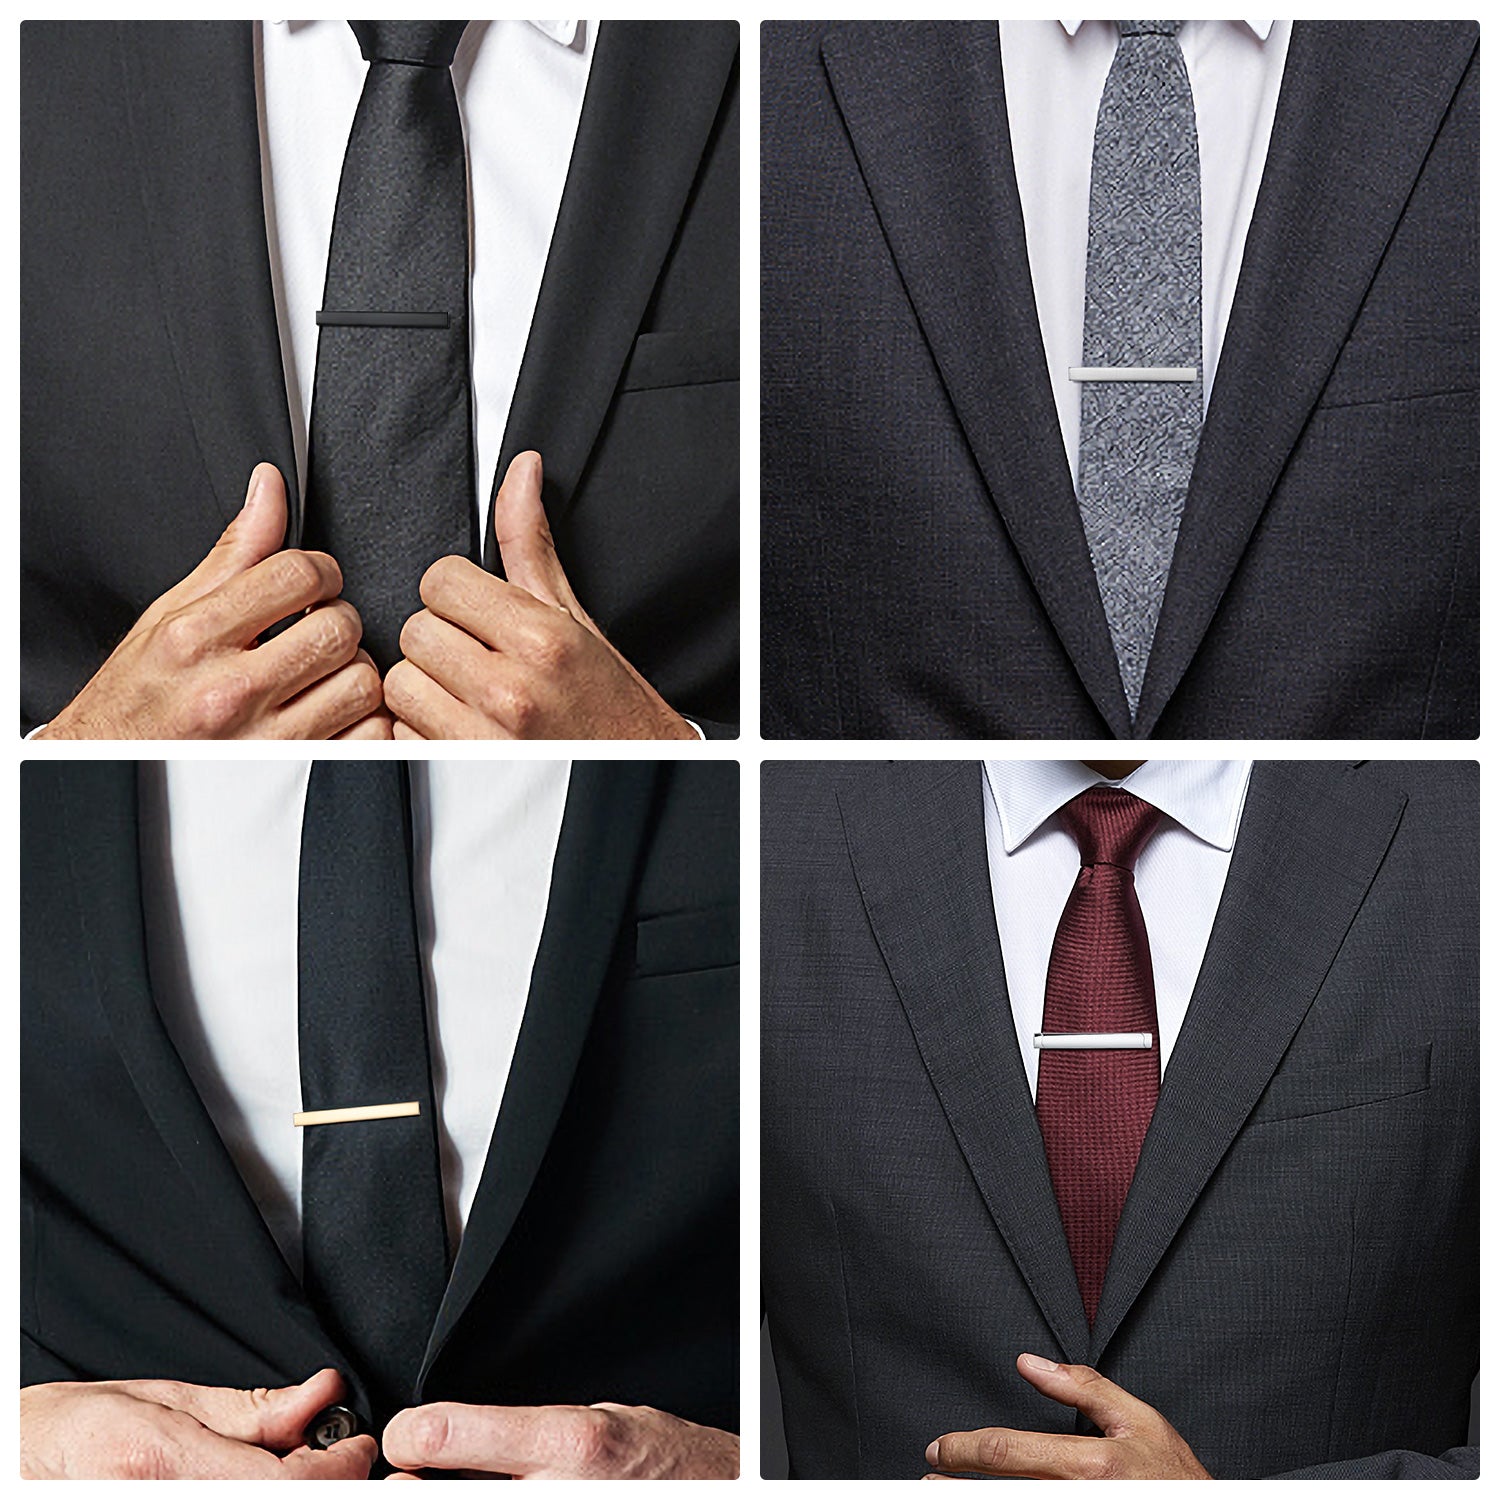 UJOY Classic Style Men's Tie Clips, Viaky Neck Ties Necktie Bar